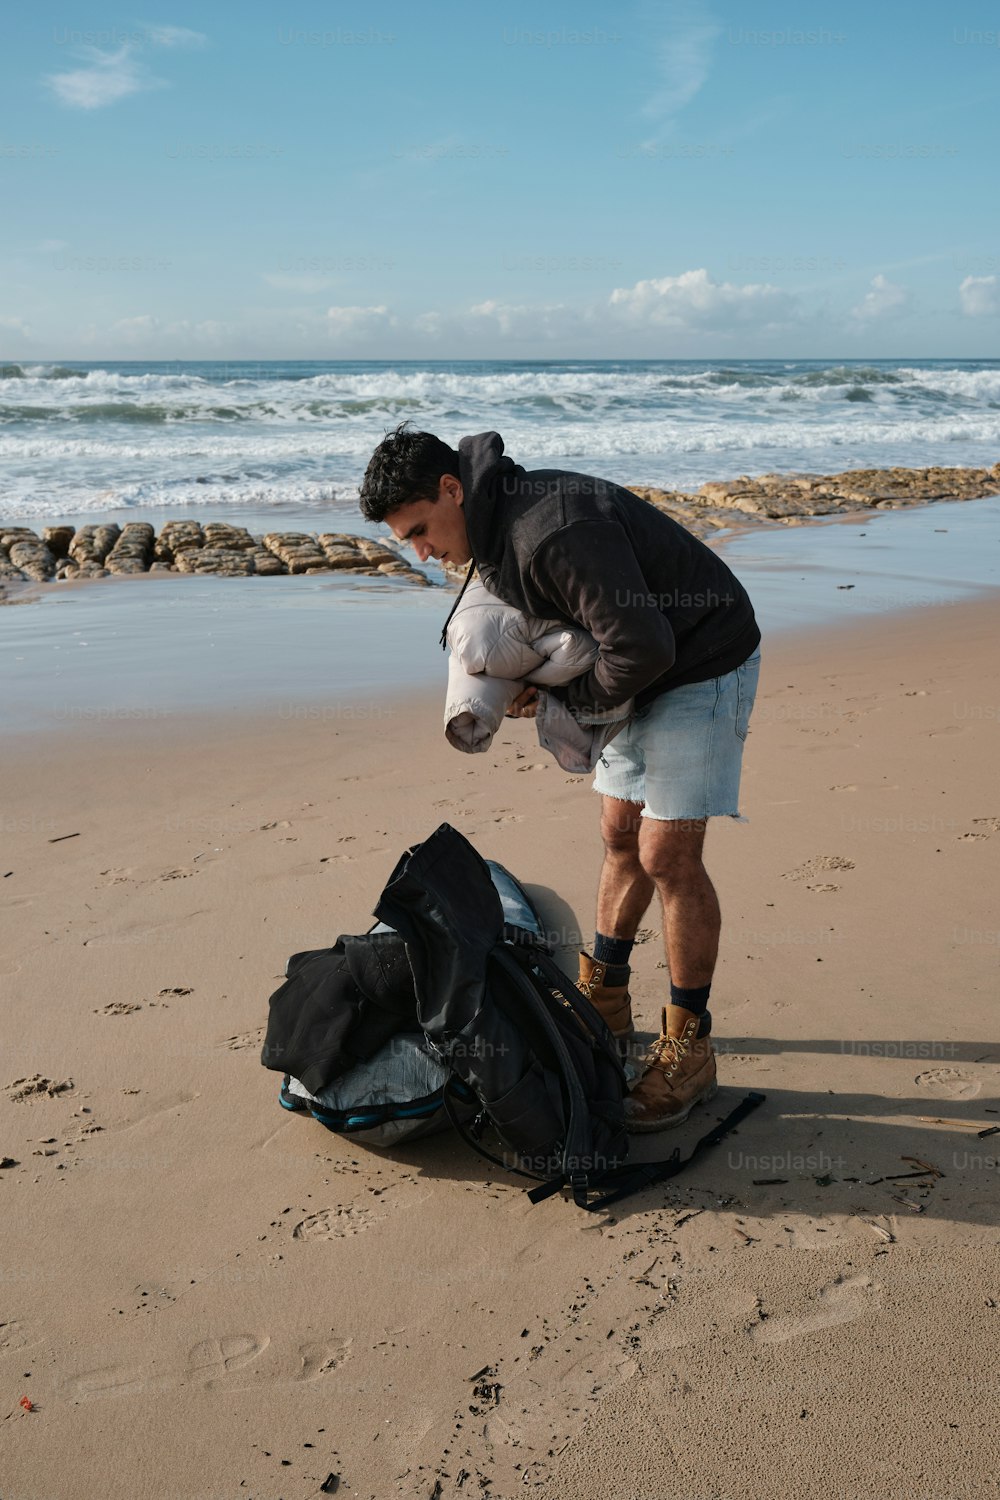 Un hombre parado en una playa junto a una bolsa